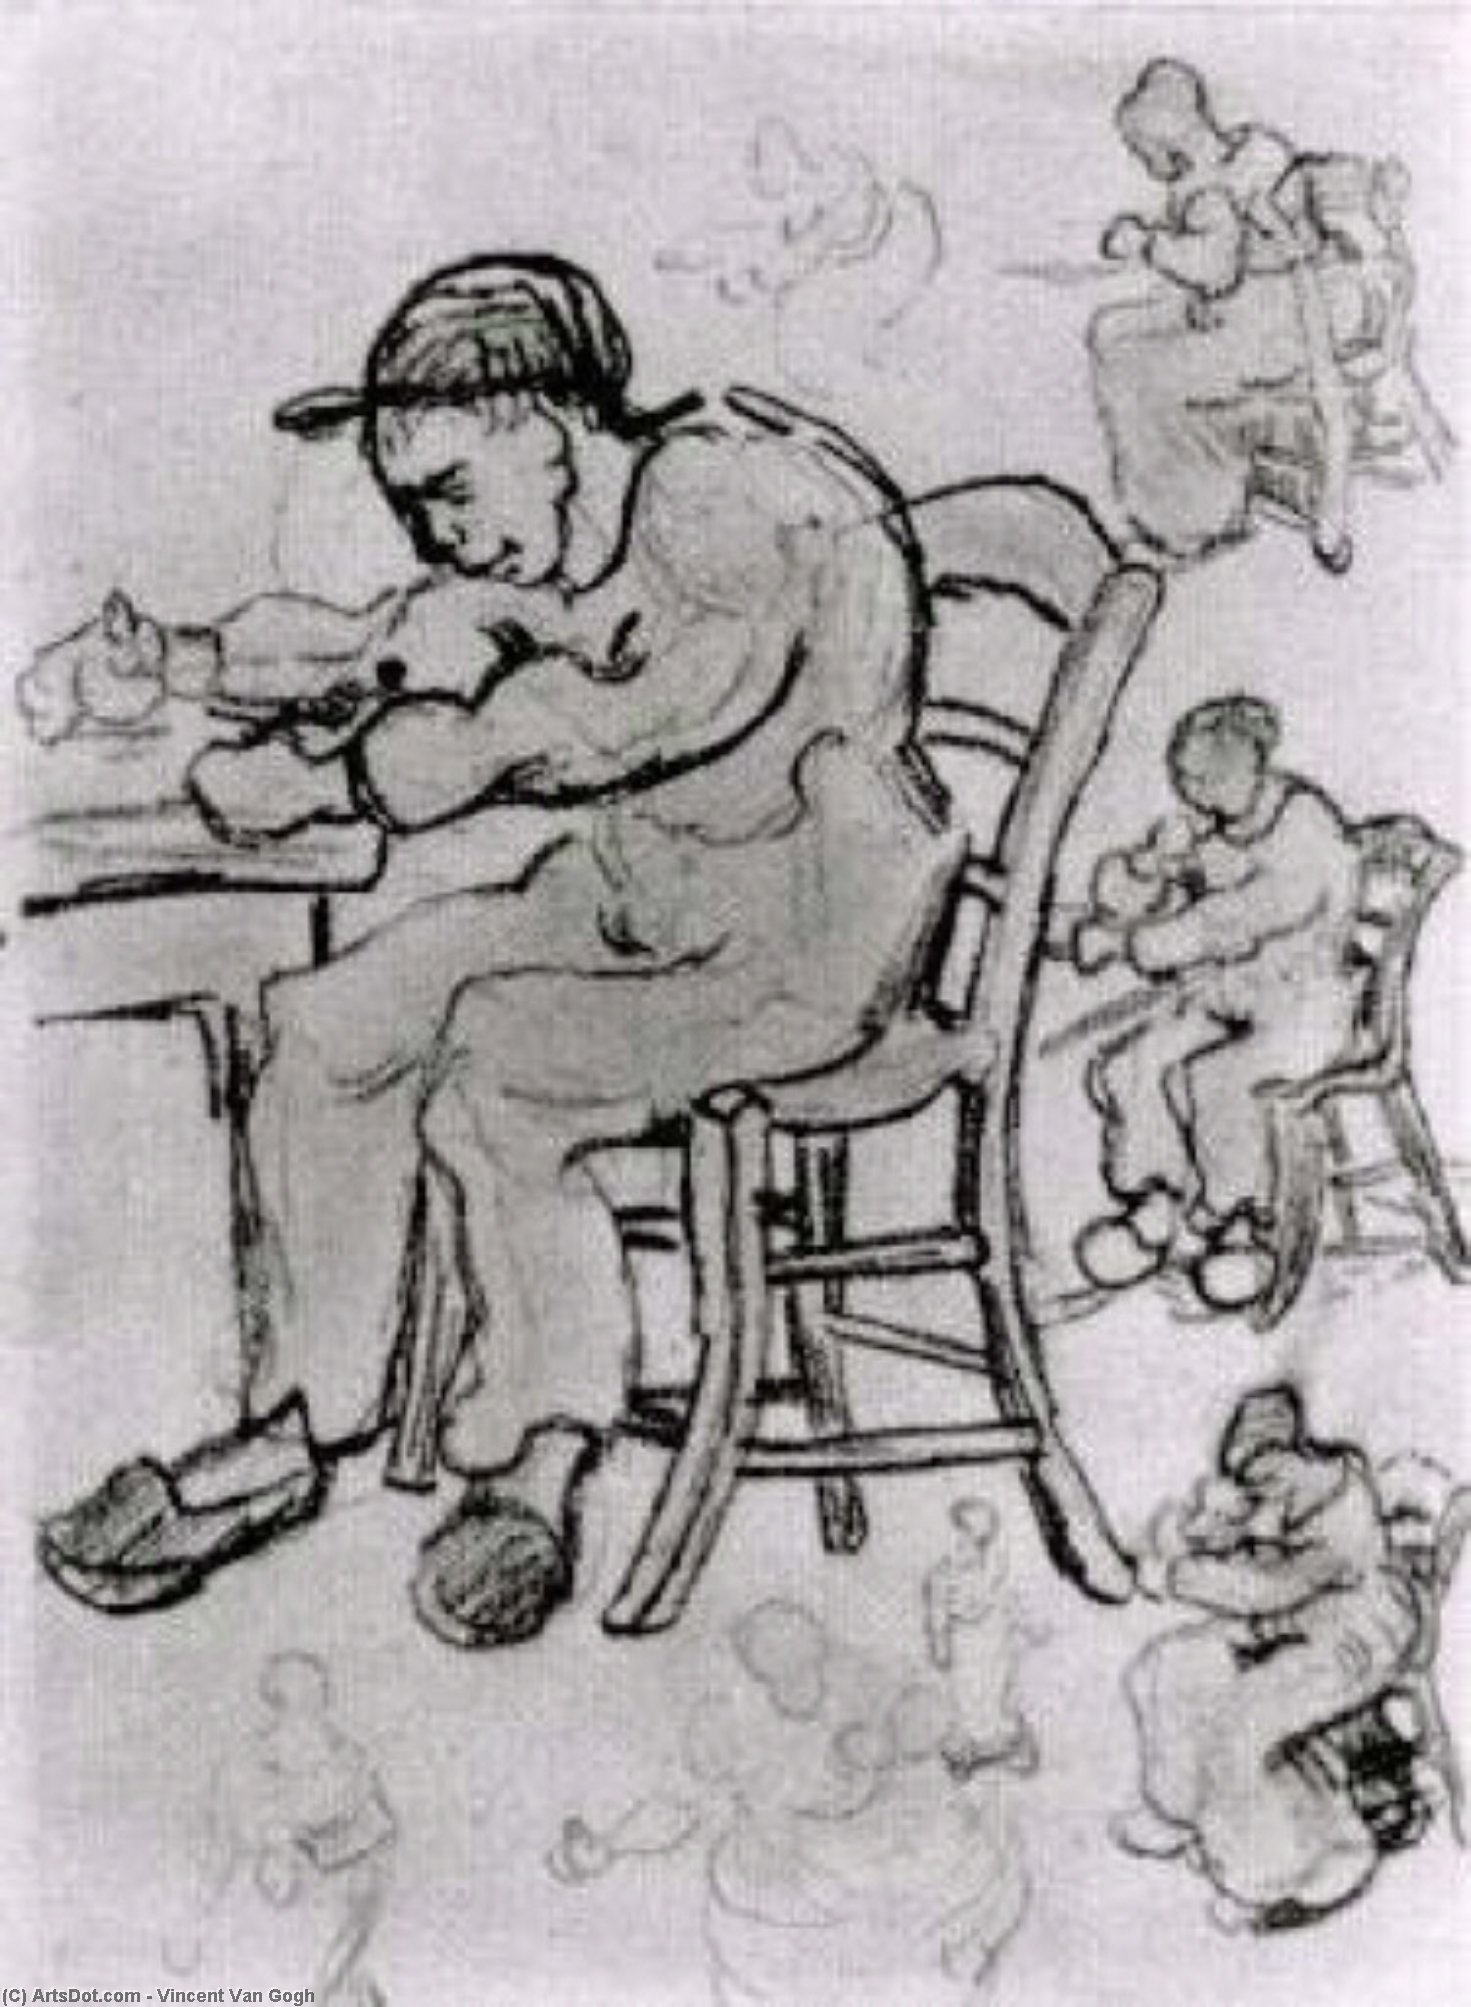 WikiOO.org - אנציקלופדיה לאמנויות יפות - ציור, יצירות אמנות Vincent Van Gogh - Sheet with People Sitting on Chairs